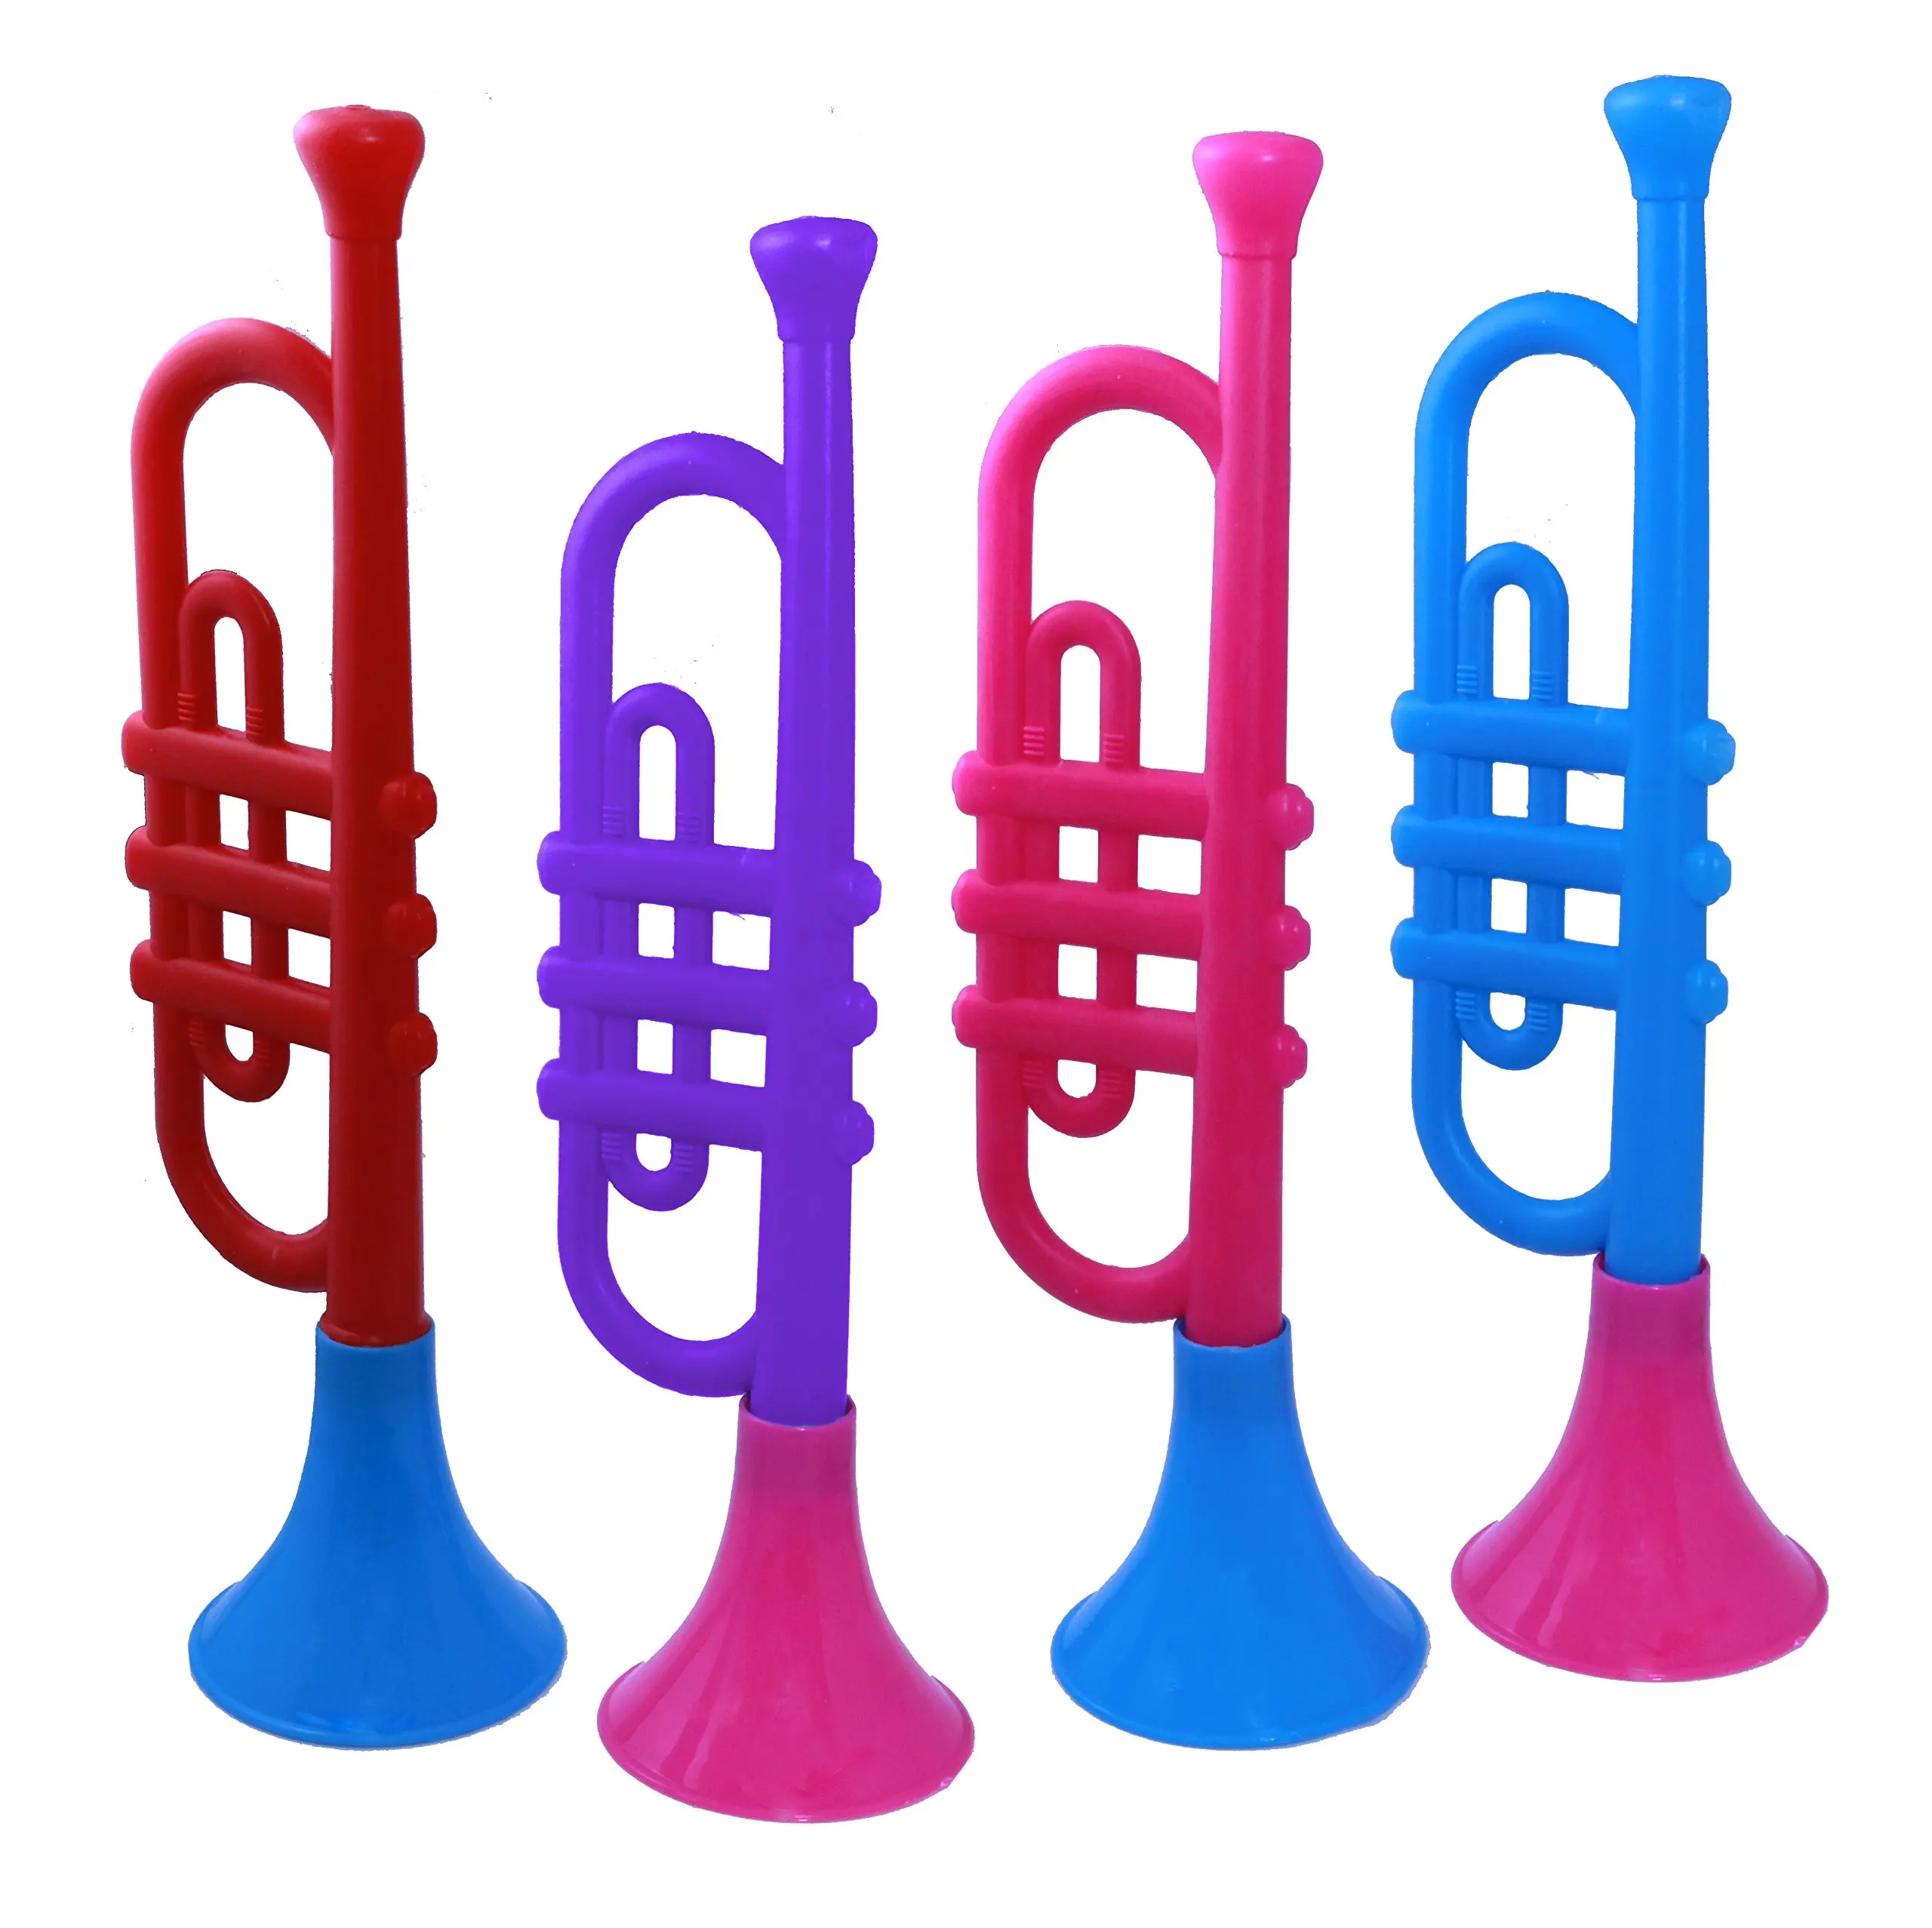 plastic trumpet toy